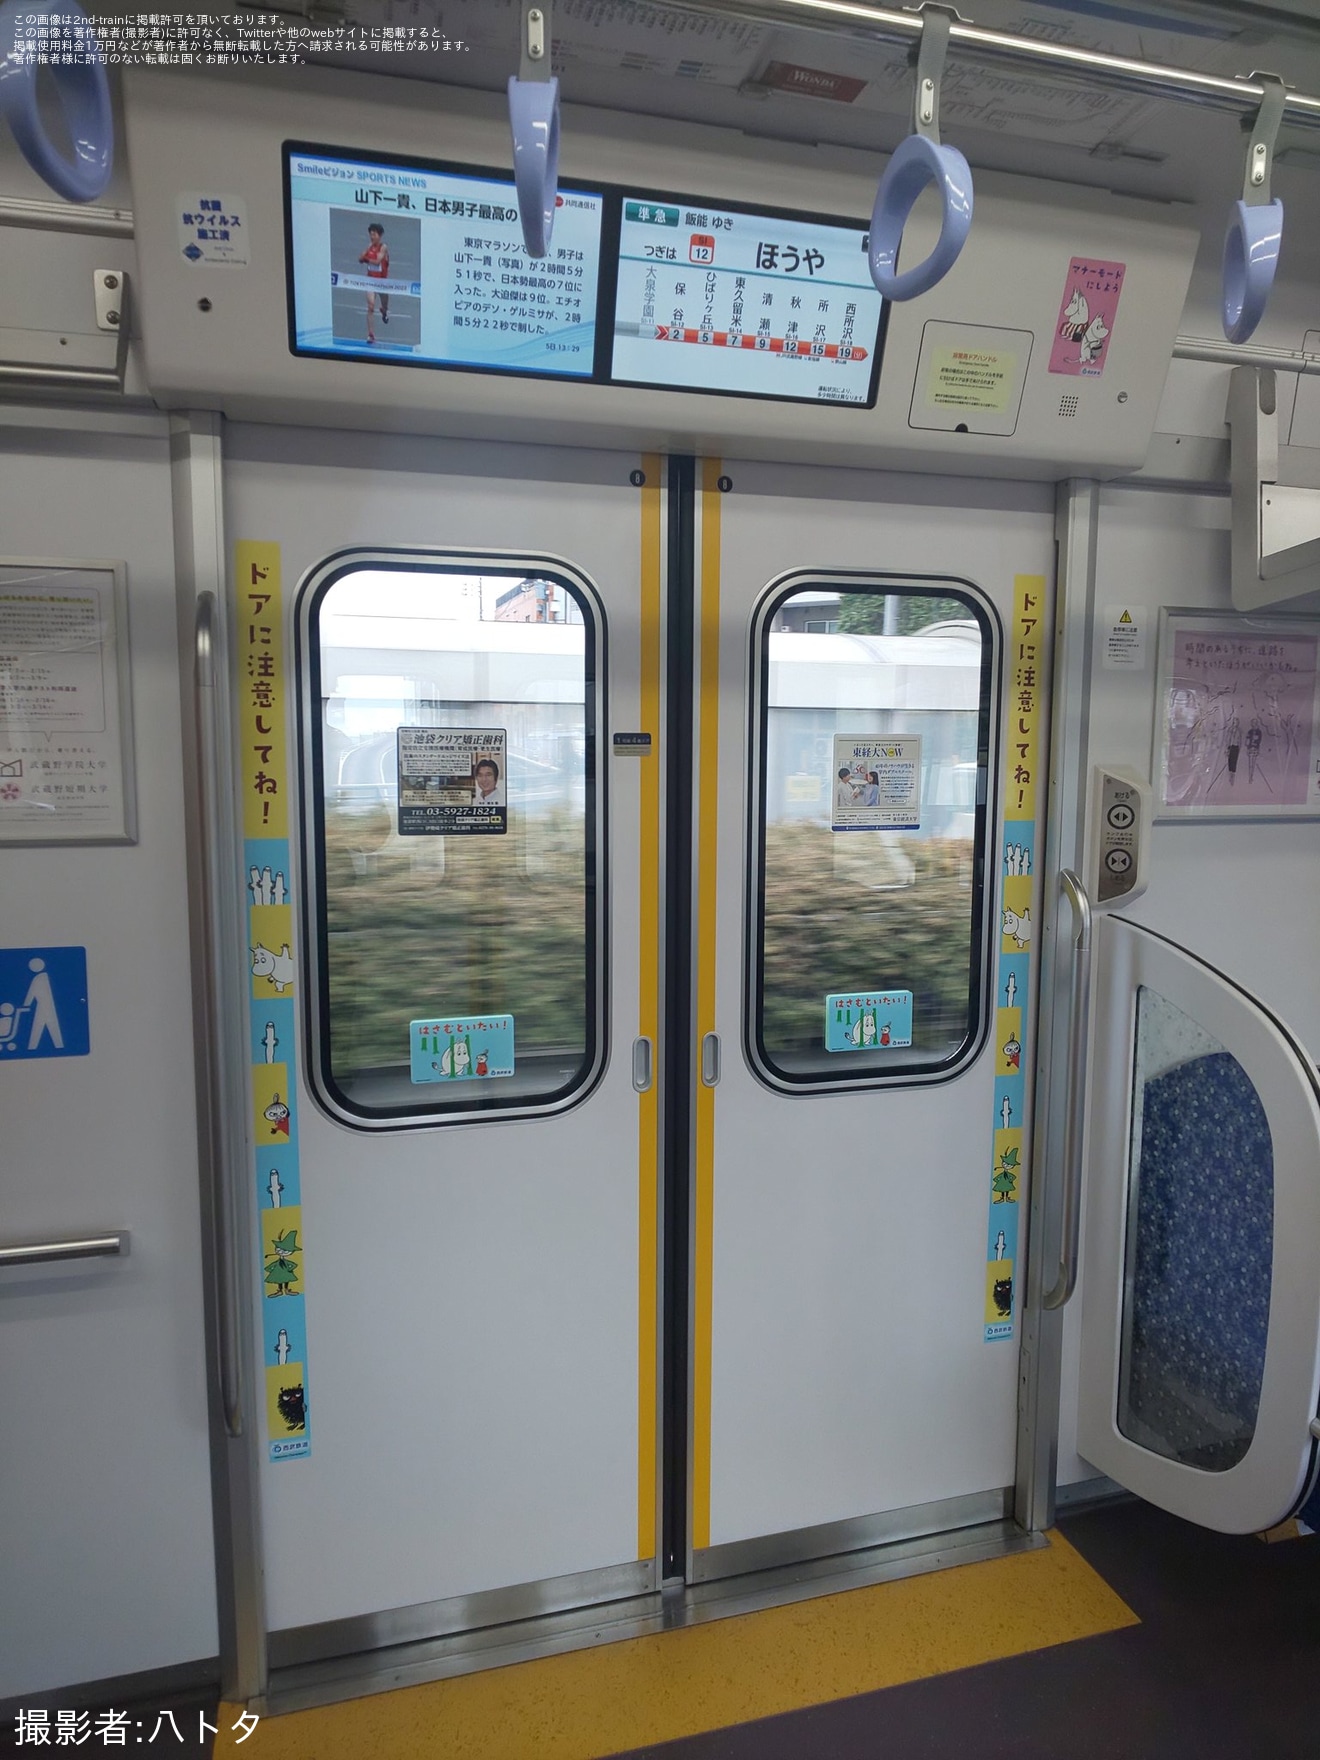 【西武】Moi!MOOMIN HANNO ラッピングトレイン運行開始の拡大写真